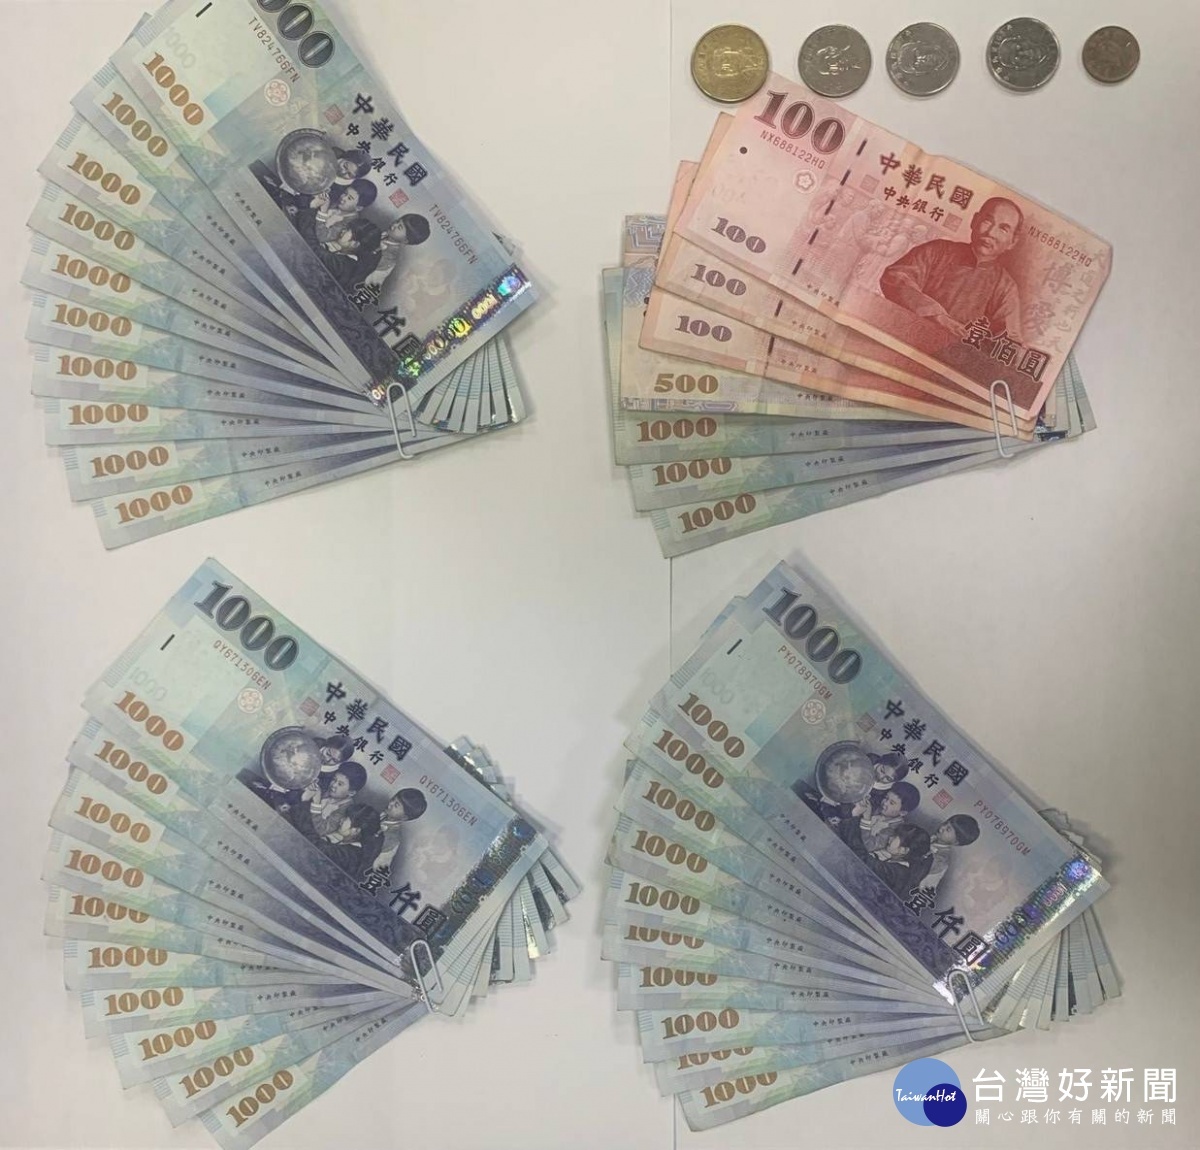 警方查扣贓款新台幣3萬3千餘元